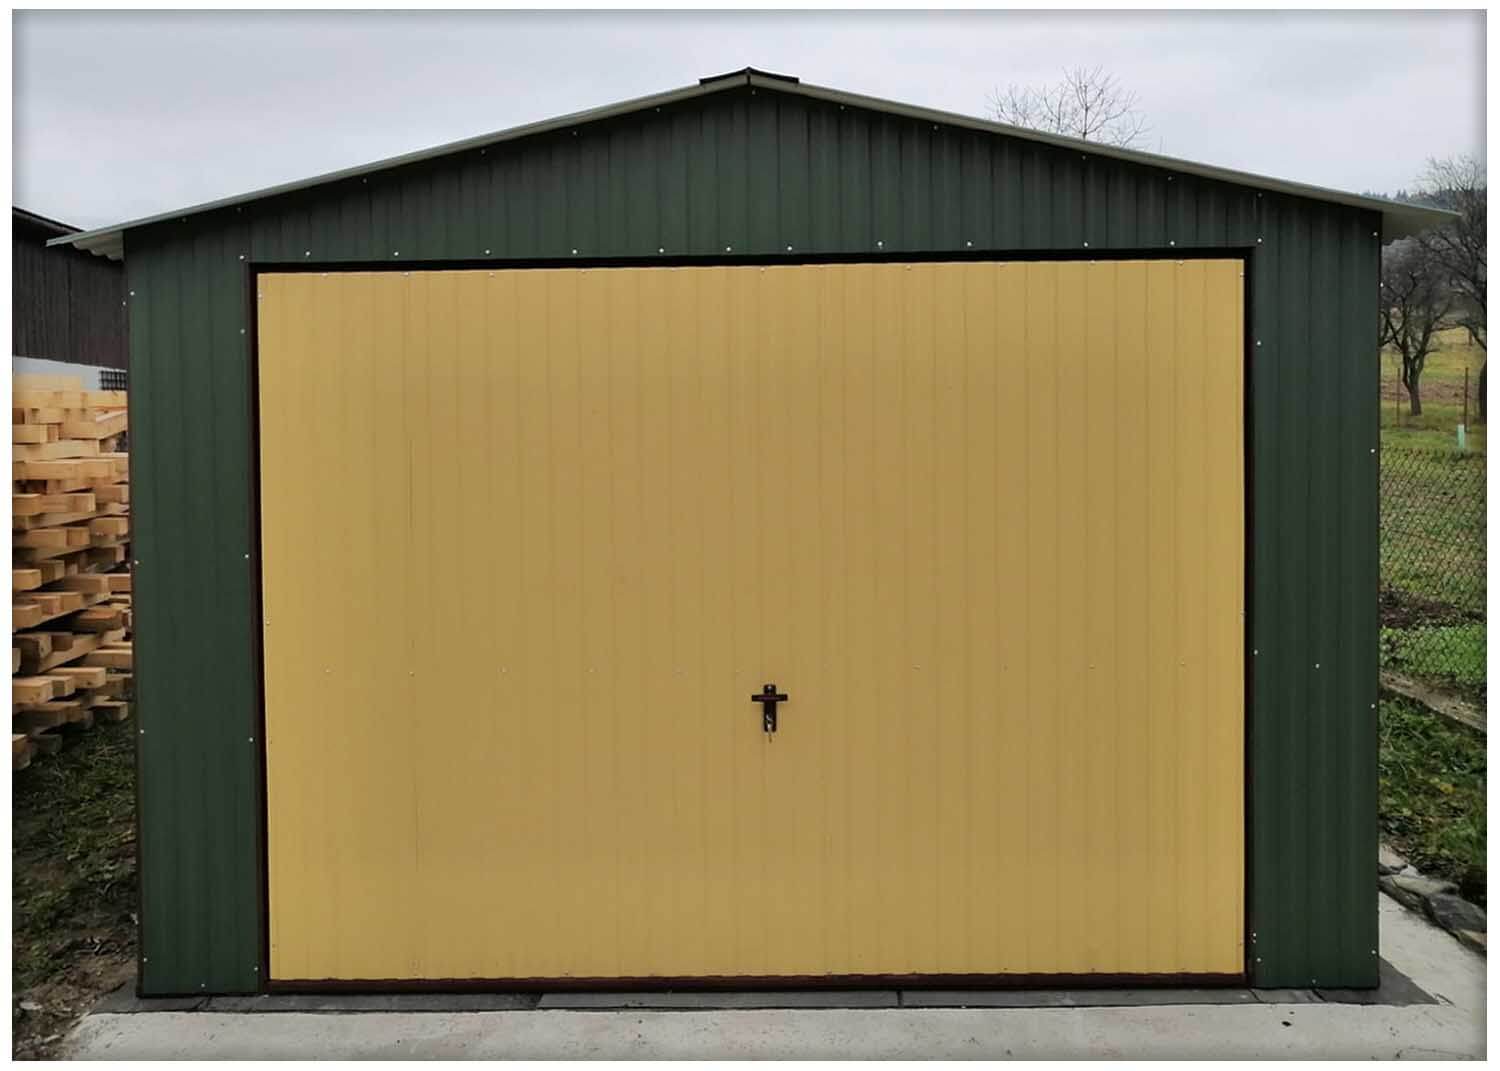 Plechová garáž 3.5 x 5m, RAL 6020 stěny + výklopná vrata RAL 1002